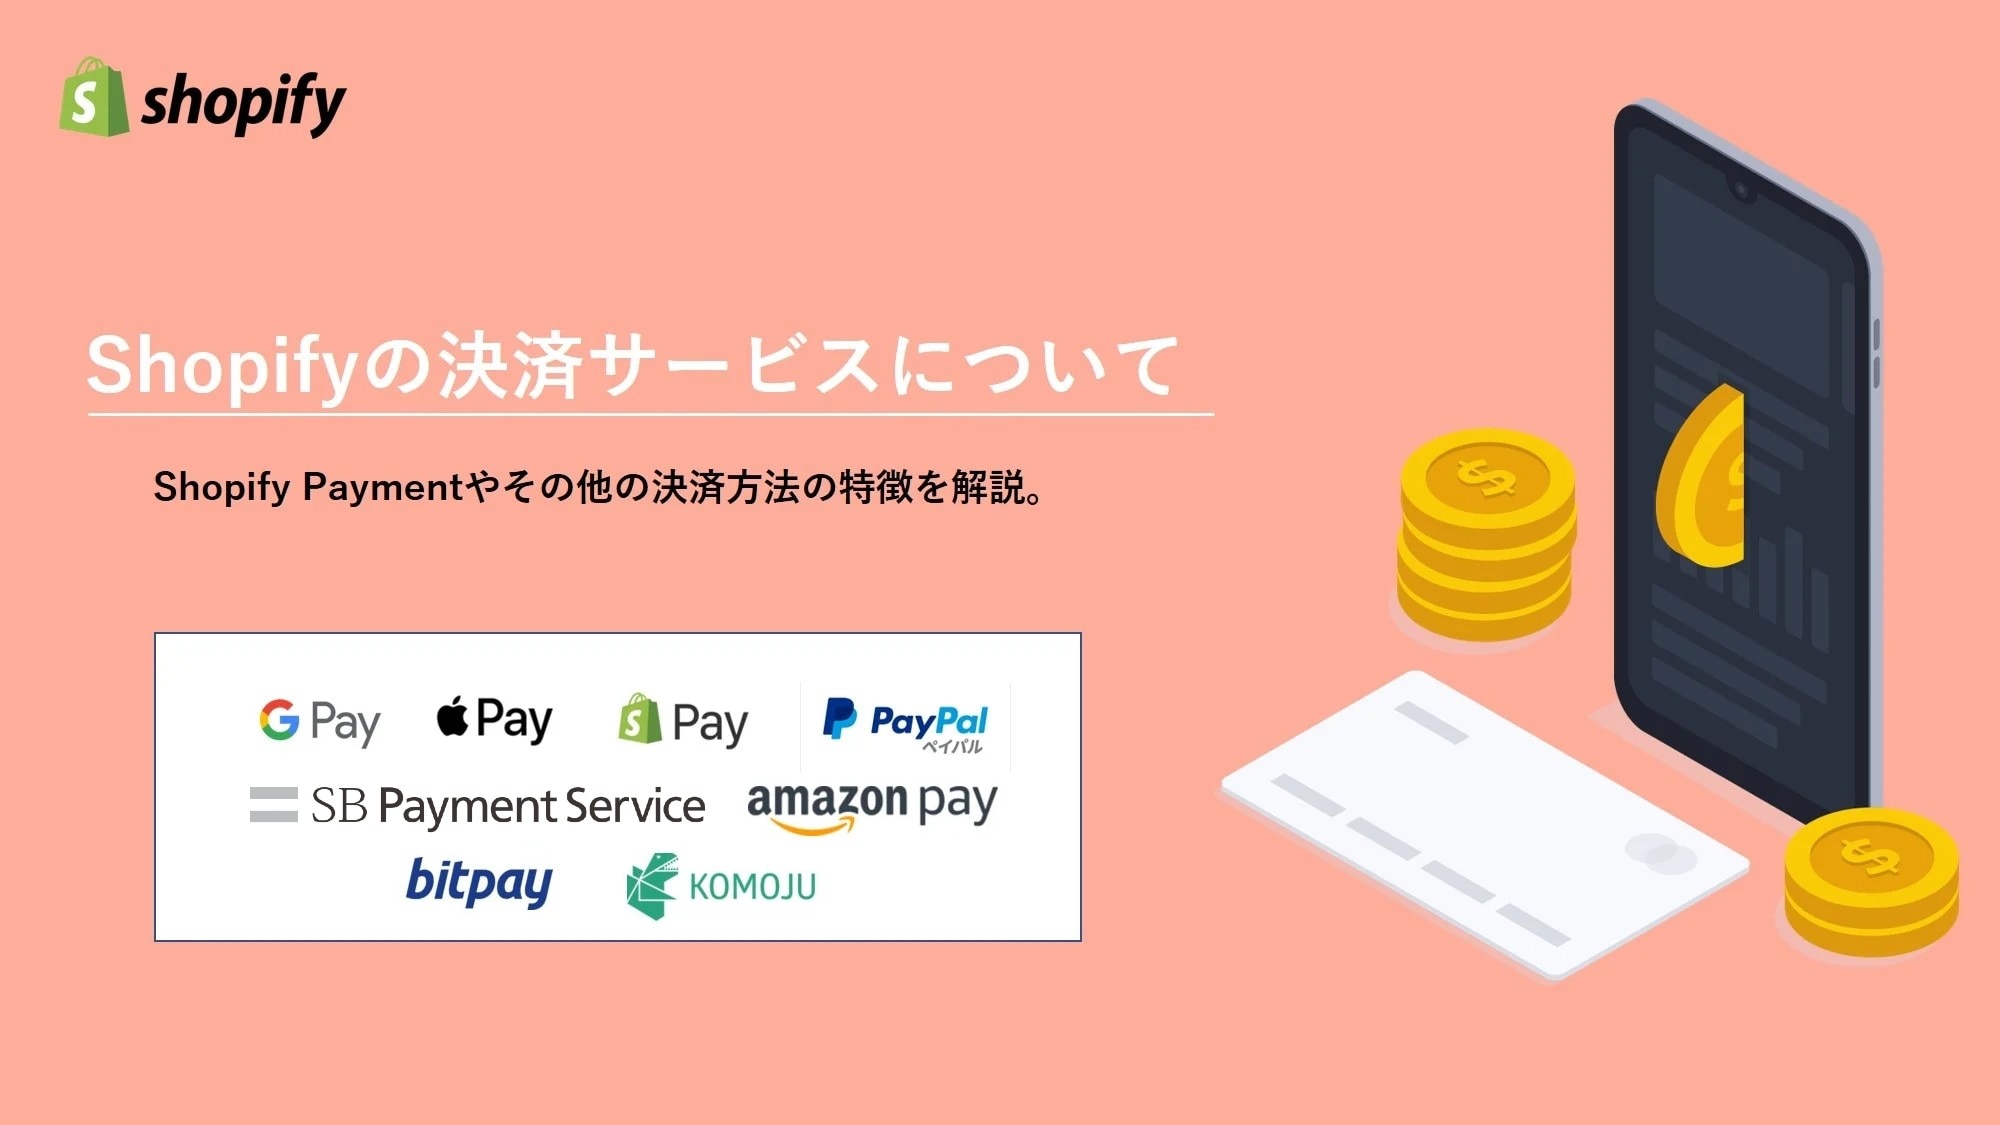 Shopify Payment（ショッピファイ ペイメント）の決済方法とその他特徴を解説。